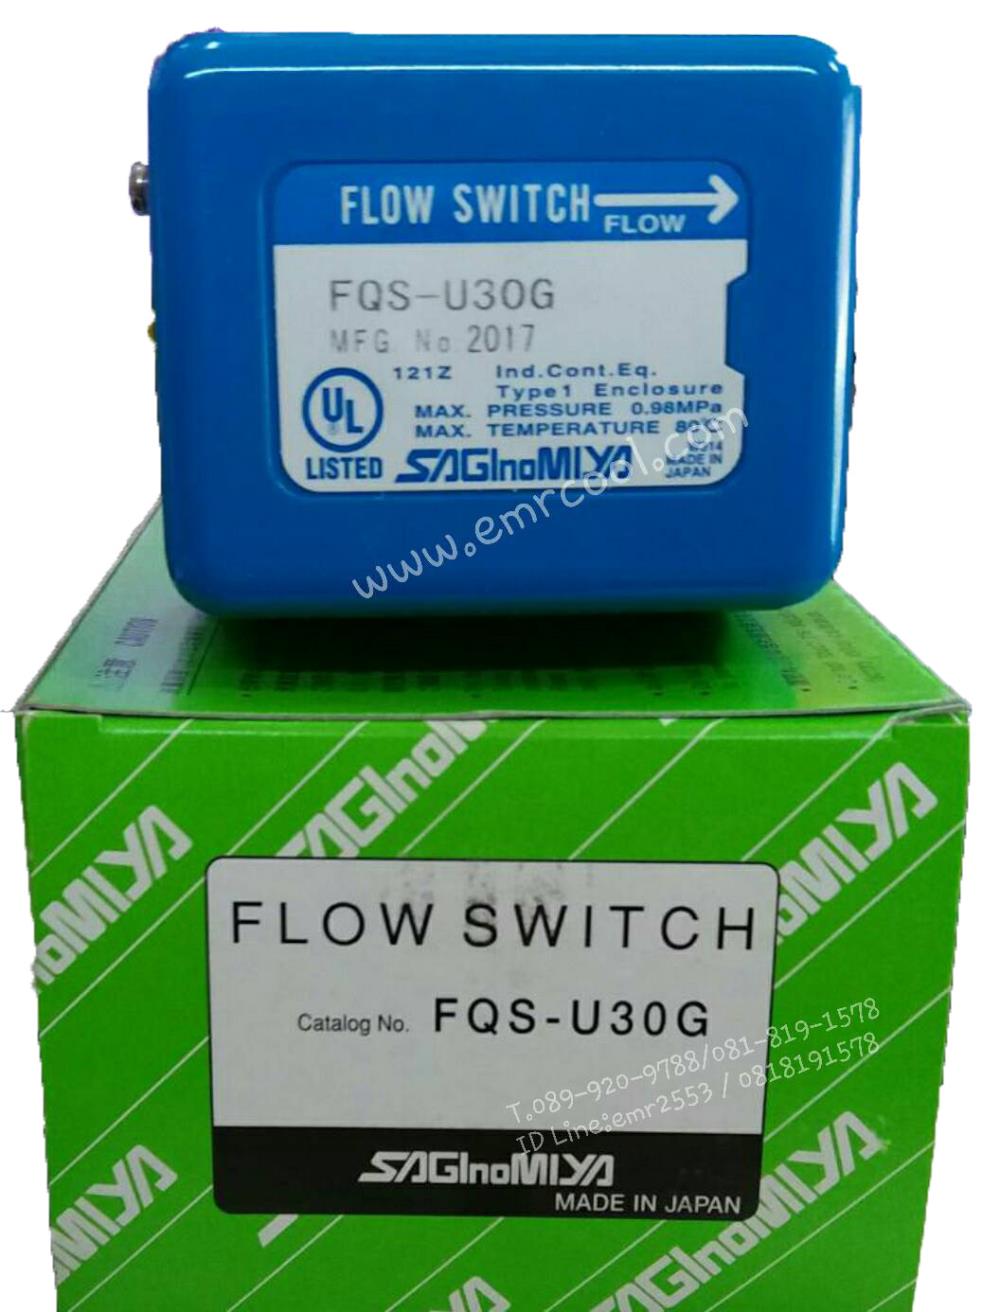 Flow Switch "SAGINOMIYA"FQS-U30G,Flow Switch FQS-U30G,Flow Switch "SAGINOMIYA"FQS-U30G,Pumps, Valves and Accessories/Valves/Flow Control Valves